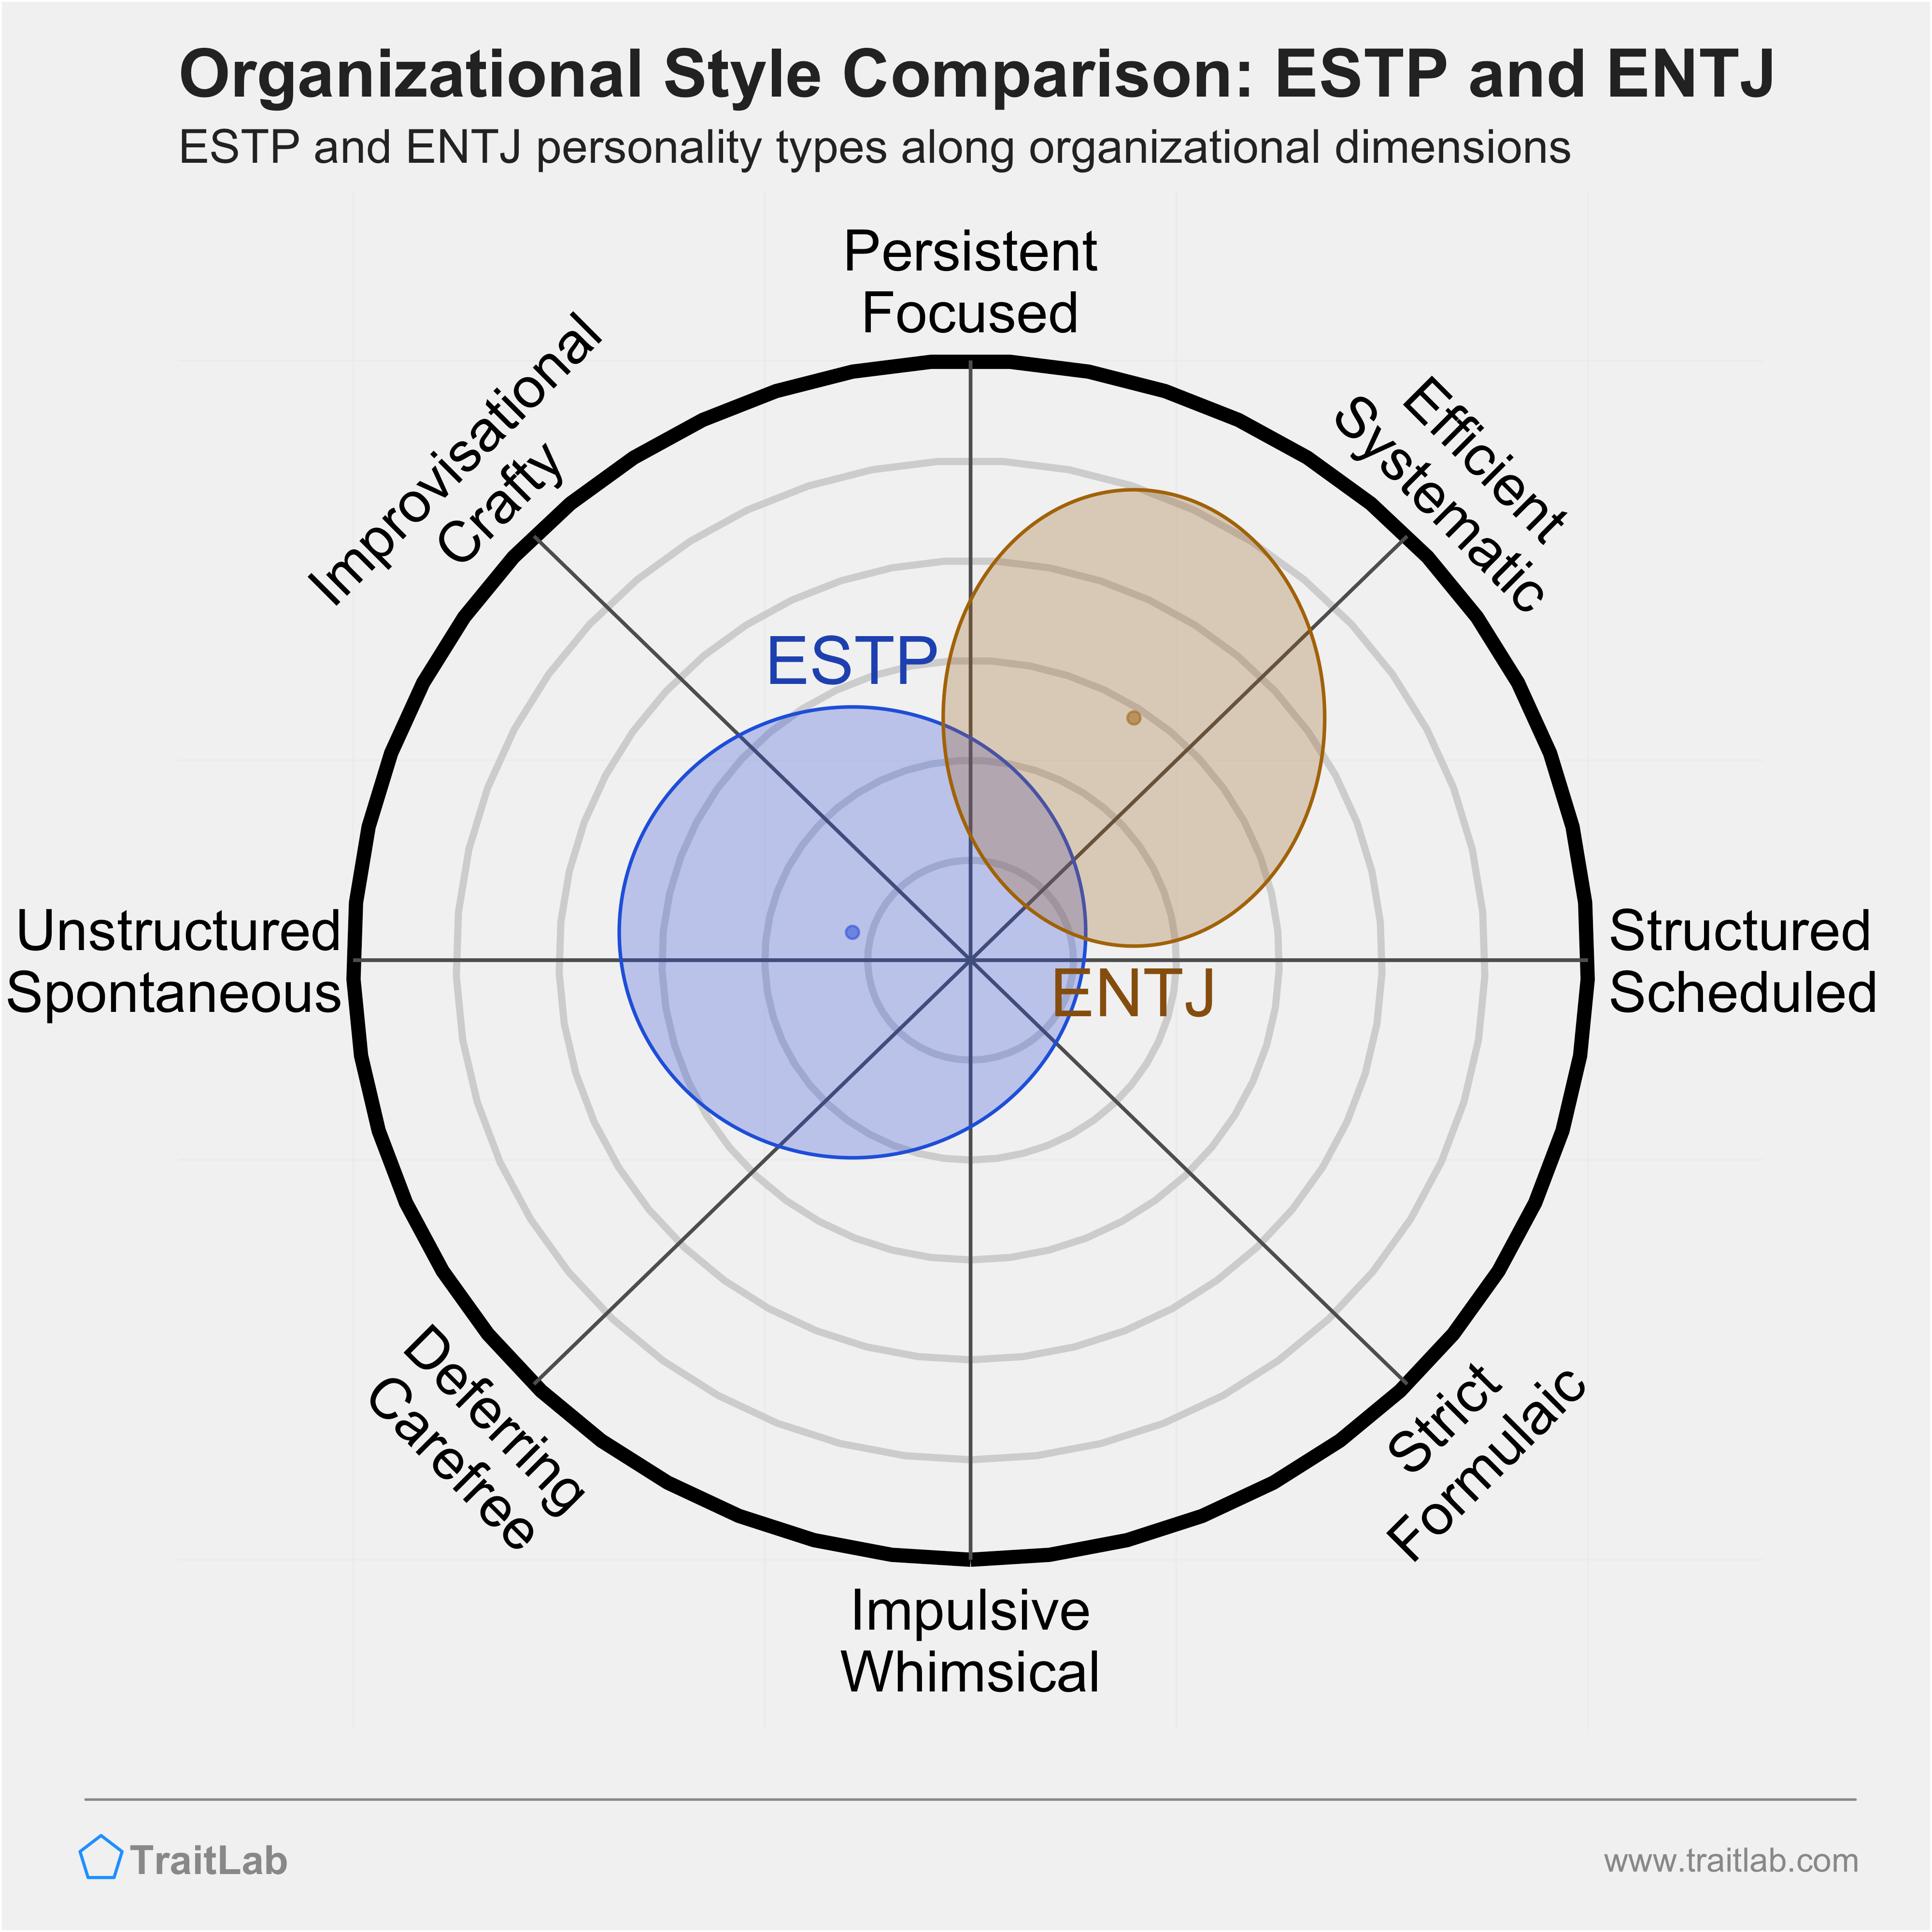 ESTP and ENTJ comparison across organizational dimensions